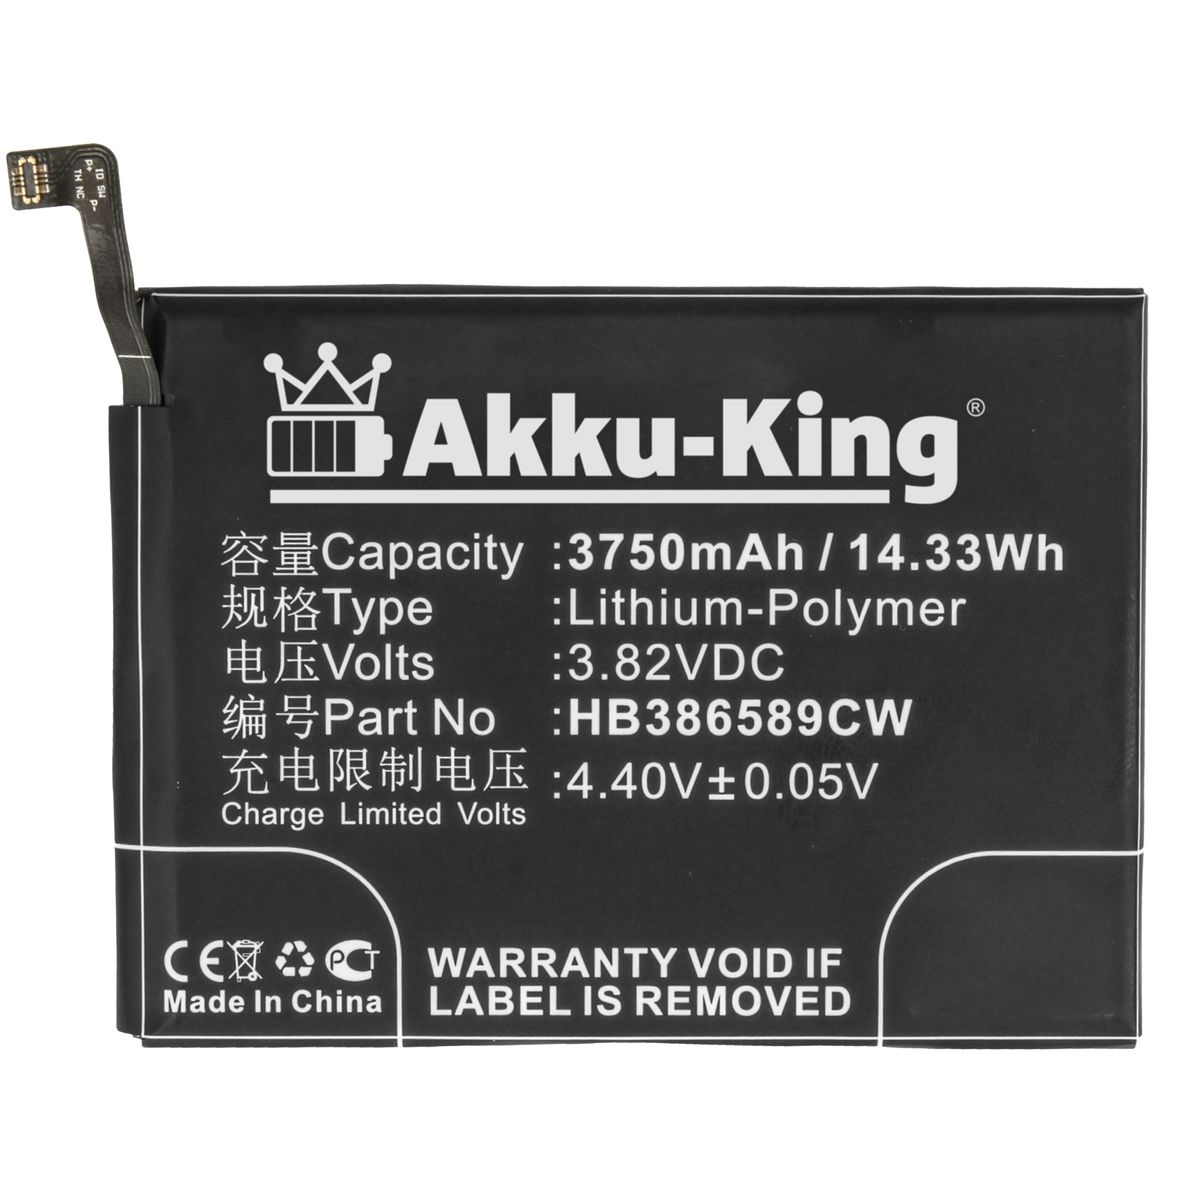 Handy-Akku, AKKU-KING mit Li-Polymer kompatibel Volt, Huawei 3.8 Akku HB386589CW 3750mAh